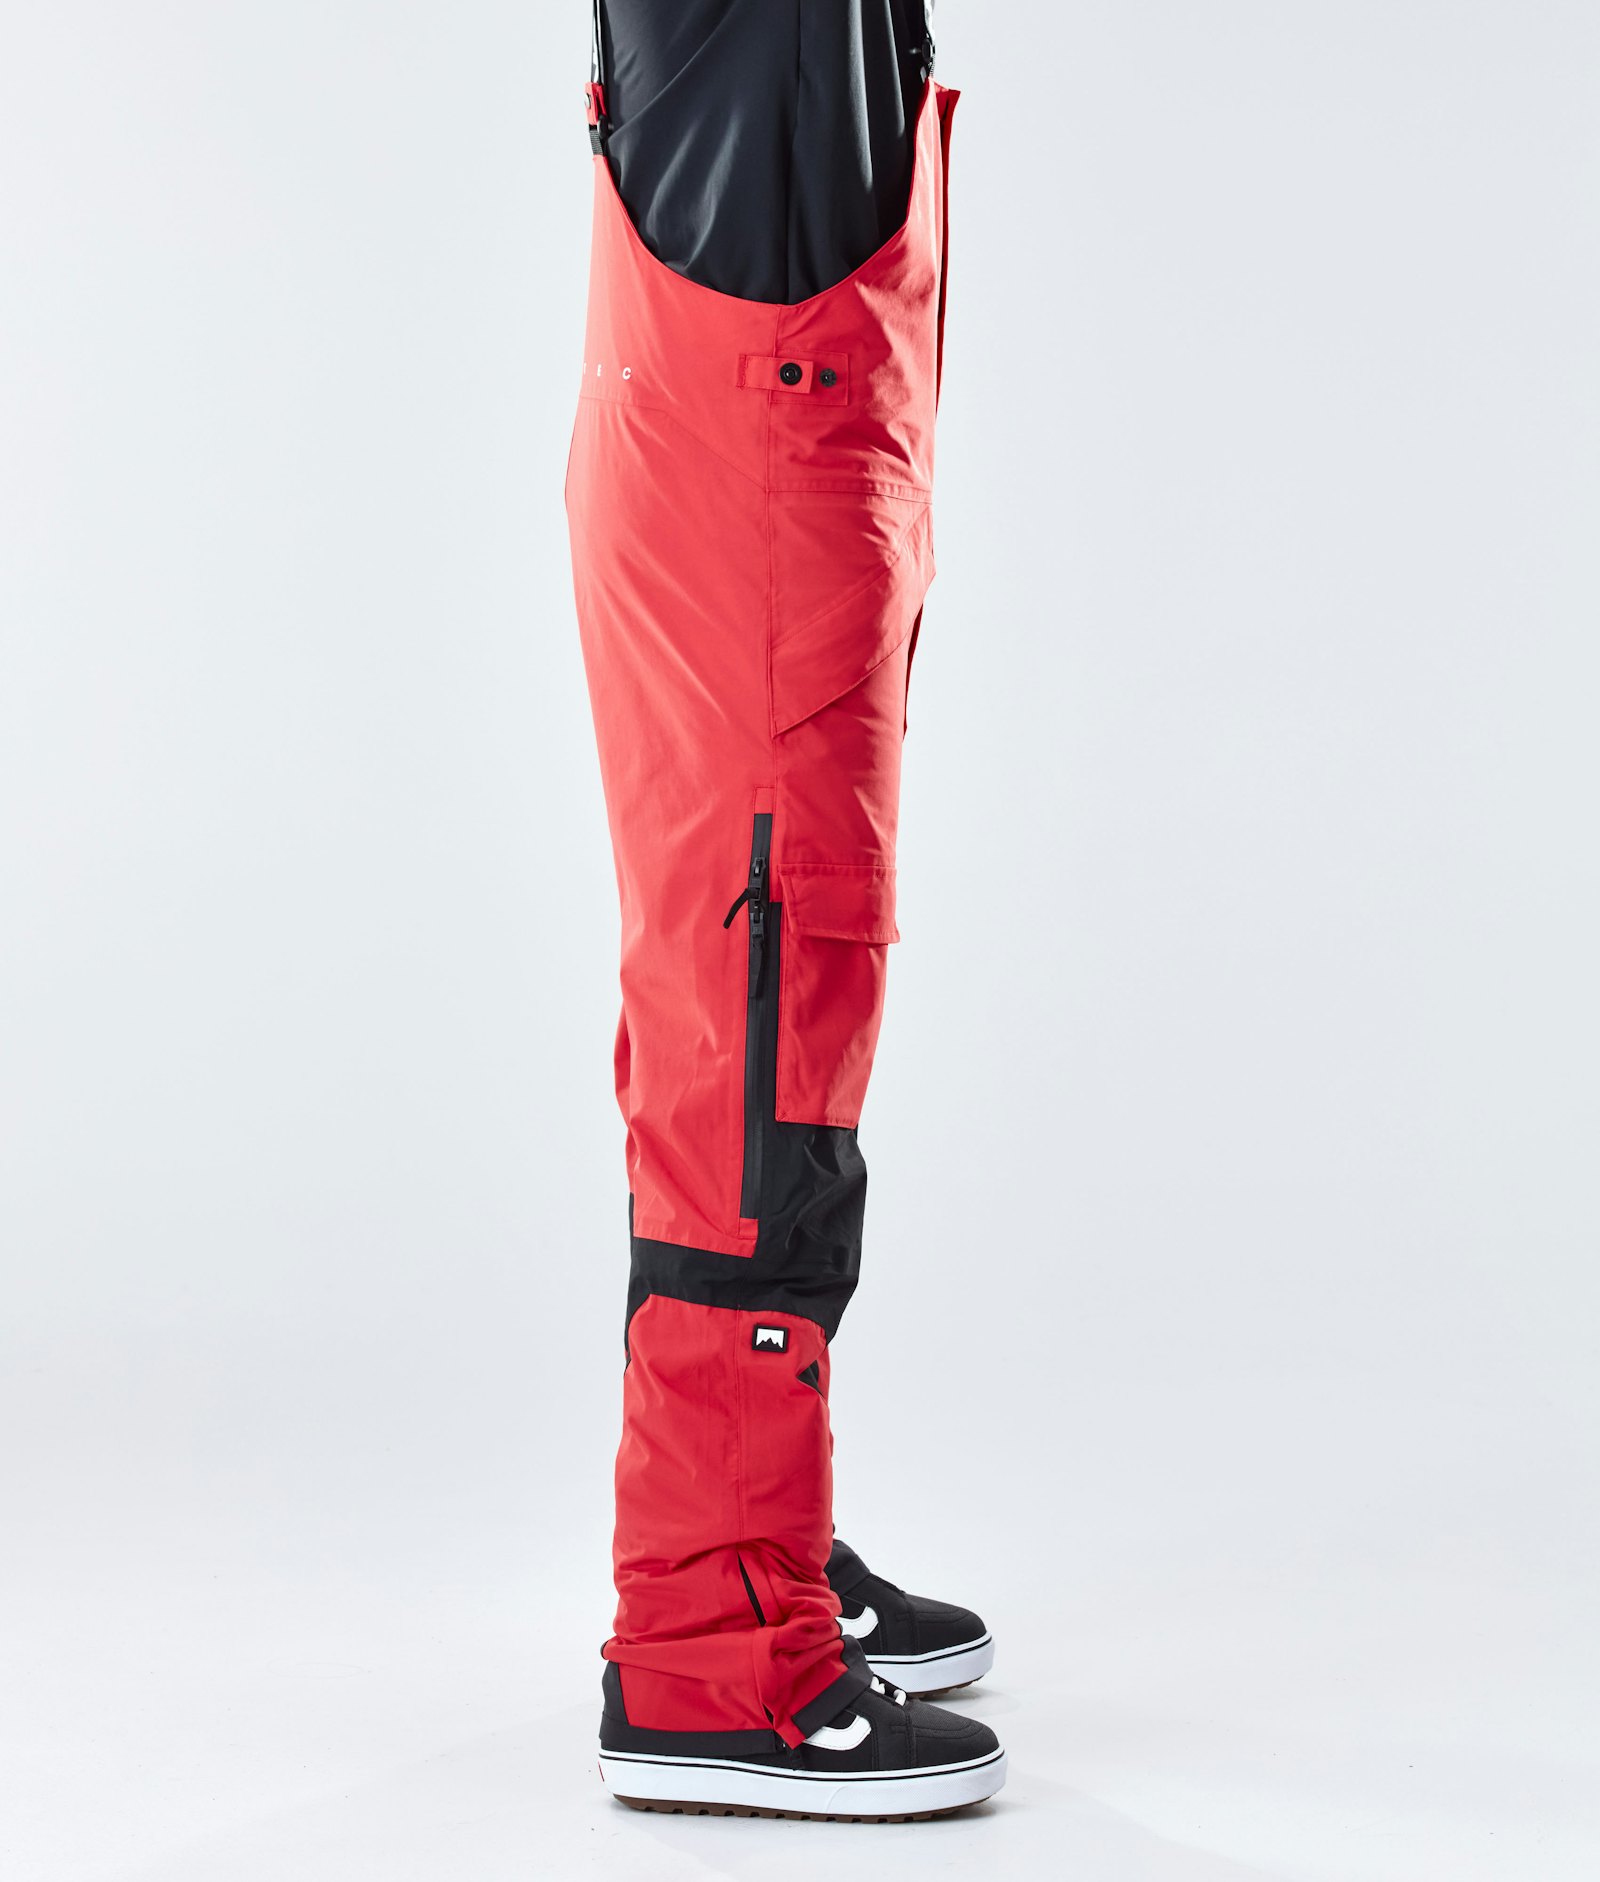 Fawk 2020 Snowboard Broek Heren Red/Black